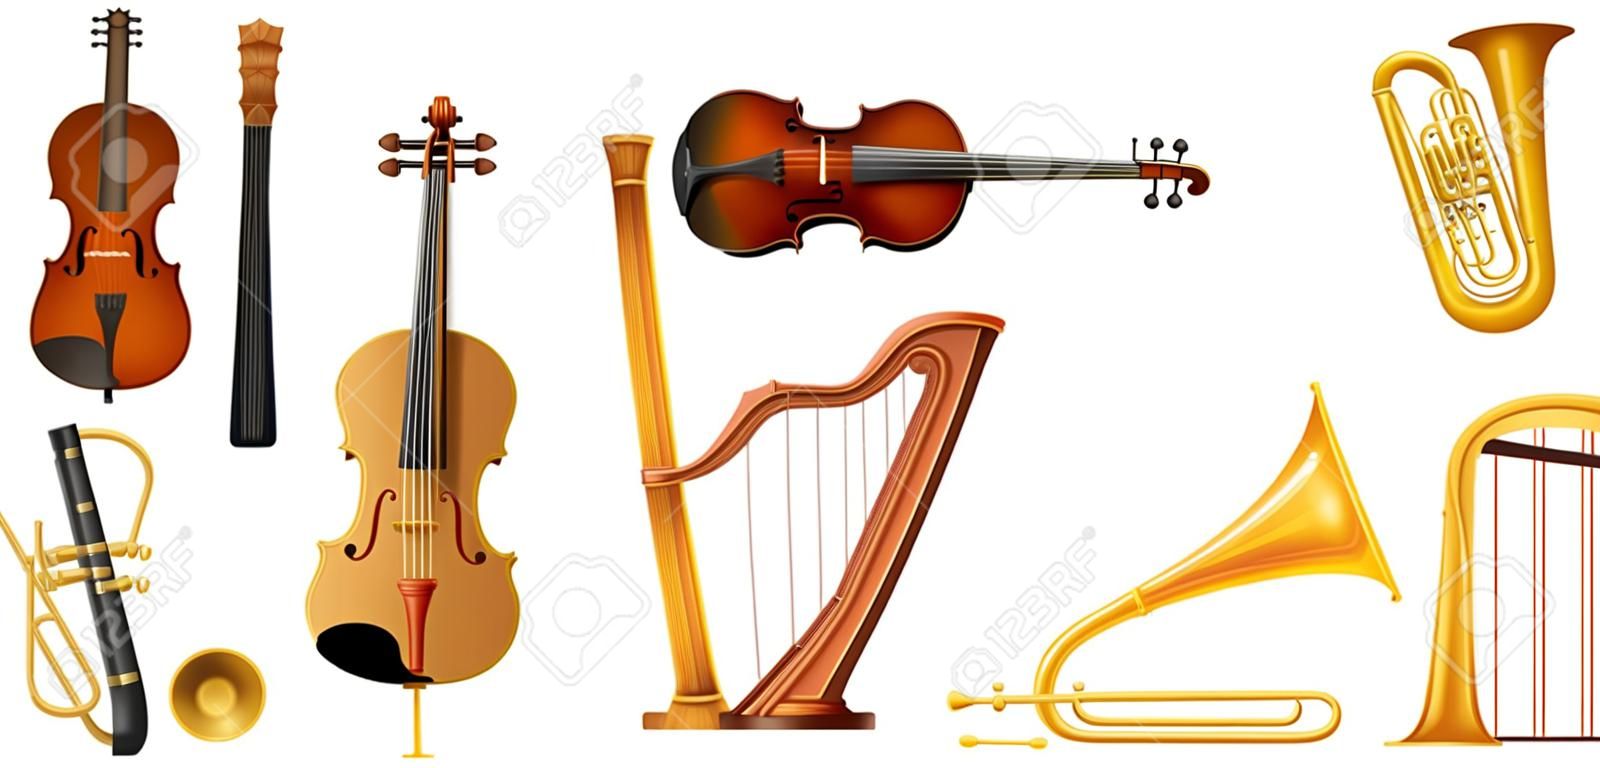 Verschillende soorten klassieke muziekinstrumenten illustratie